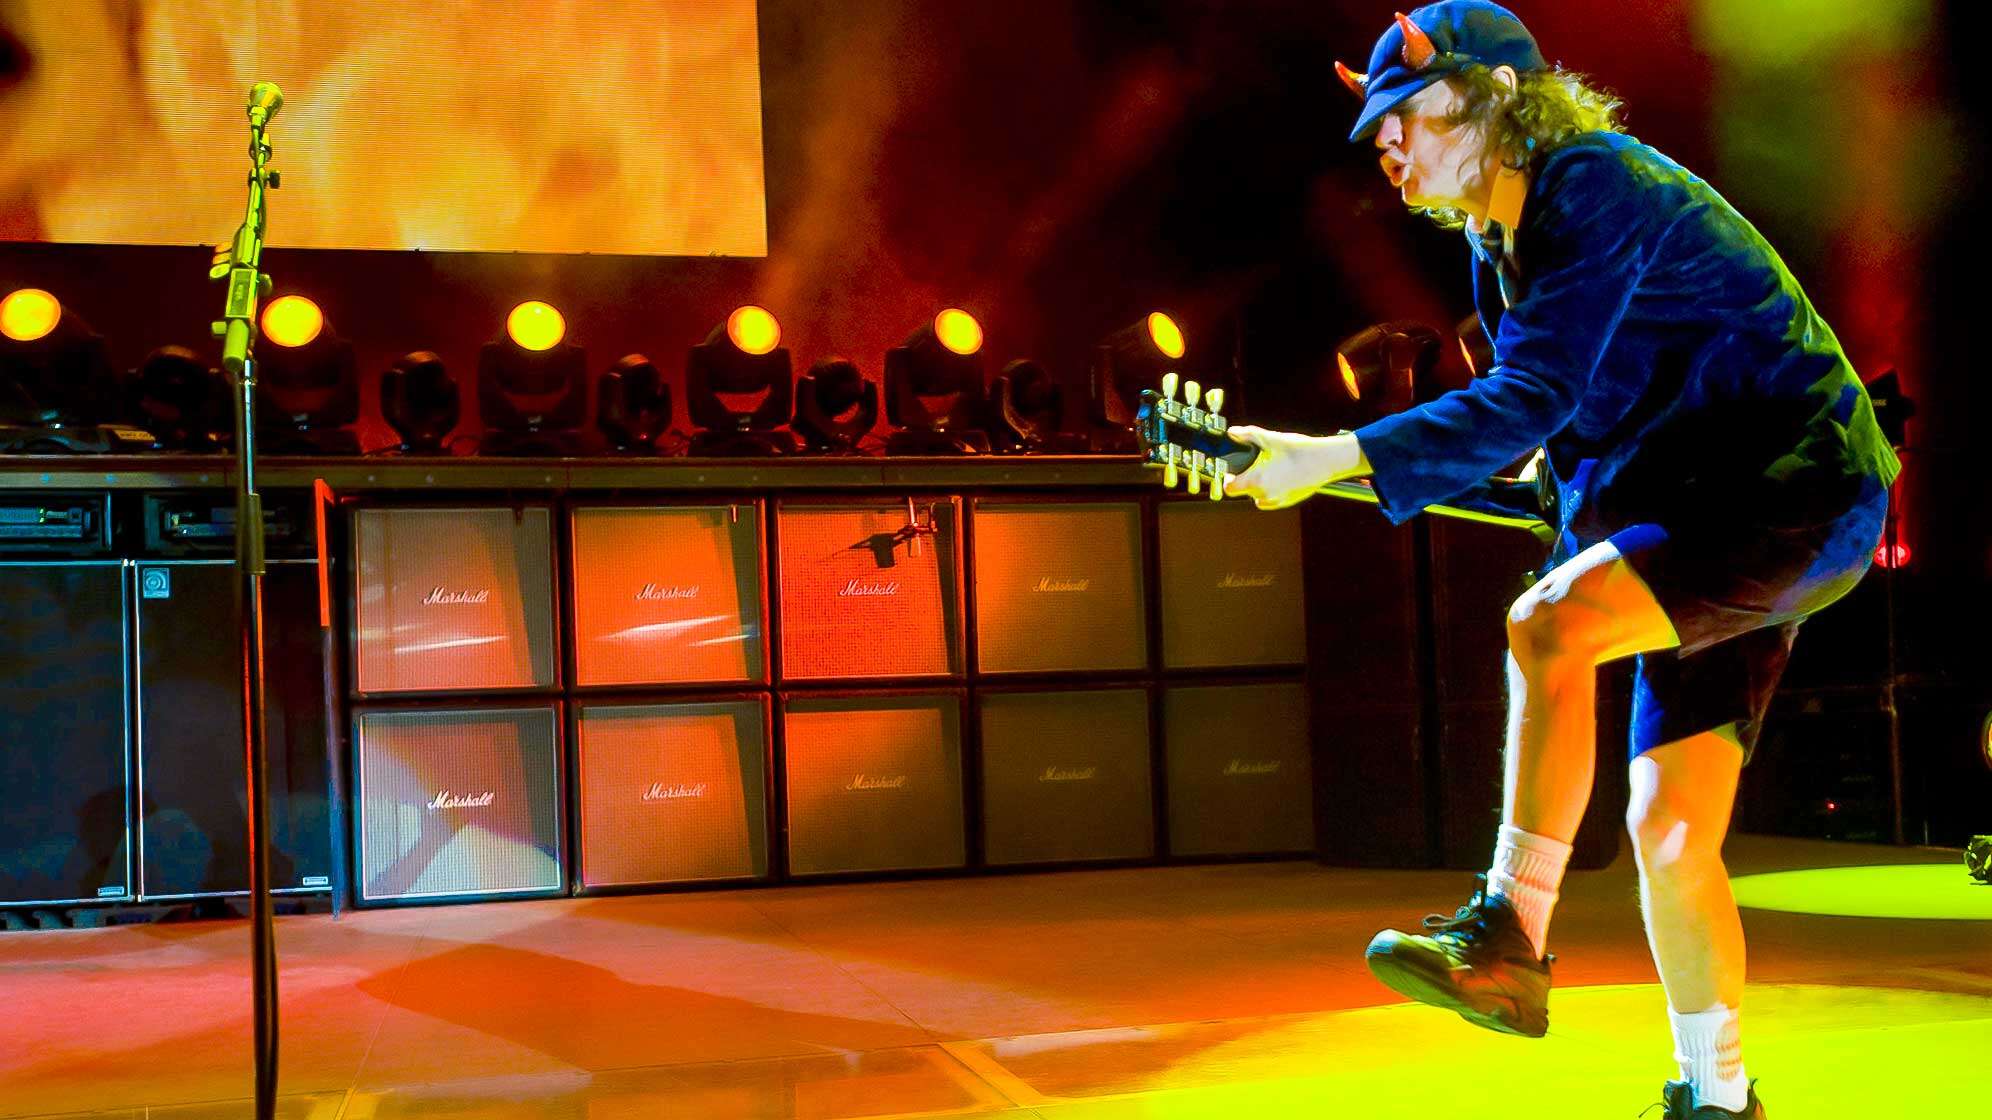 Gitarrist Angus Young auf der Bühne von AC/DC.